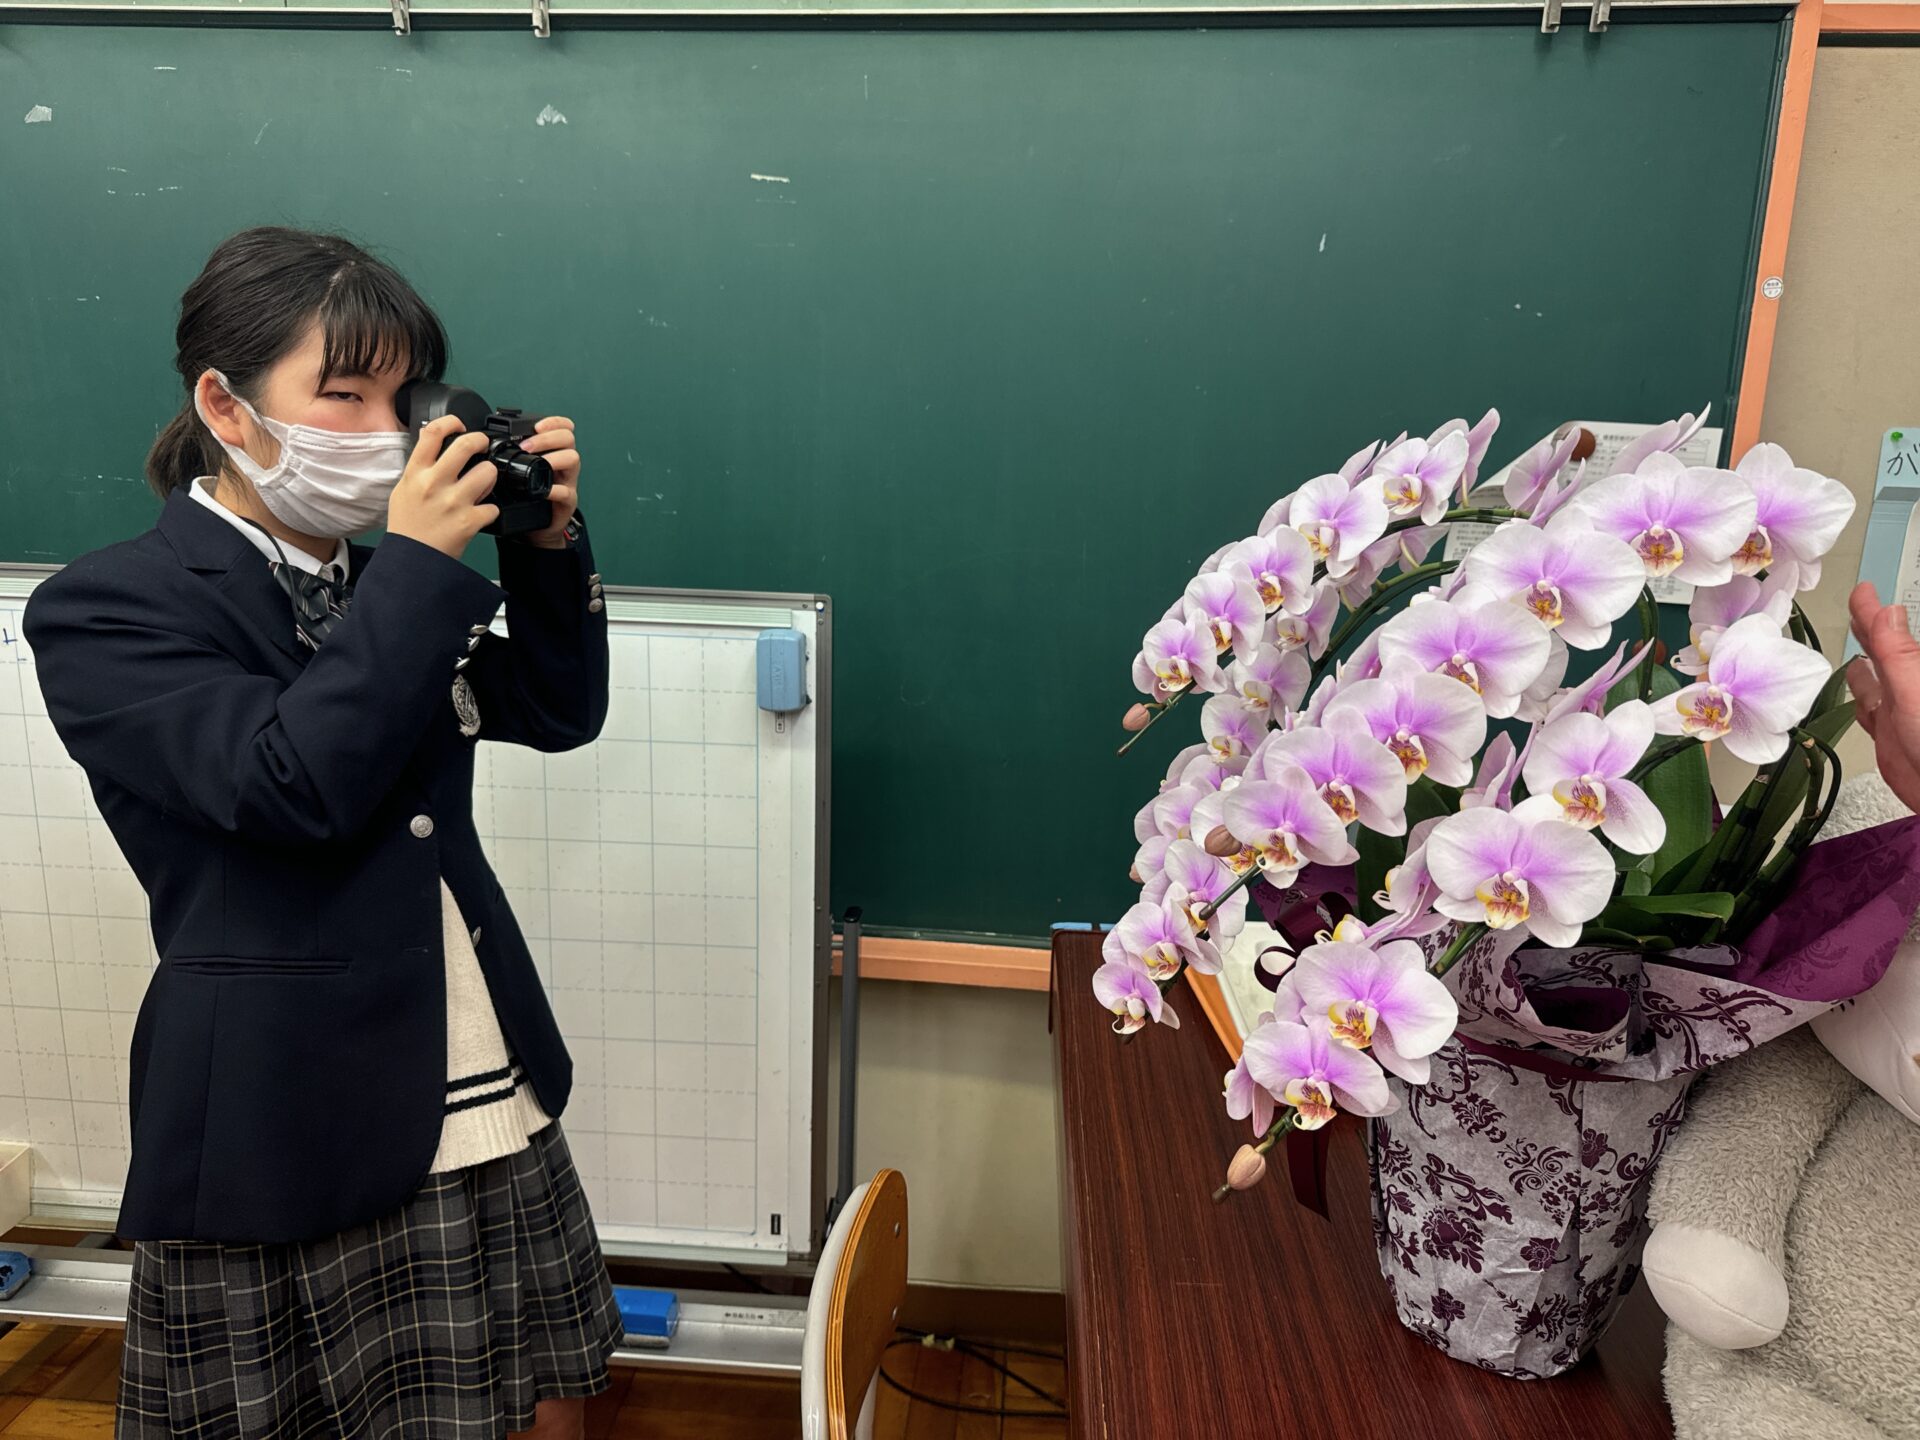 八王子もうがっこうで、高校生のロービジョンの女の子が網膜投影カメラキットのファインダー越しにこちょうらんのハチウエを撮影している様子をうつした写真